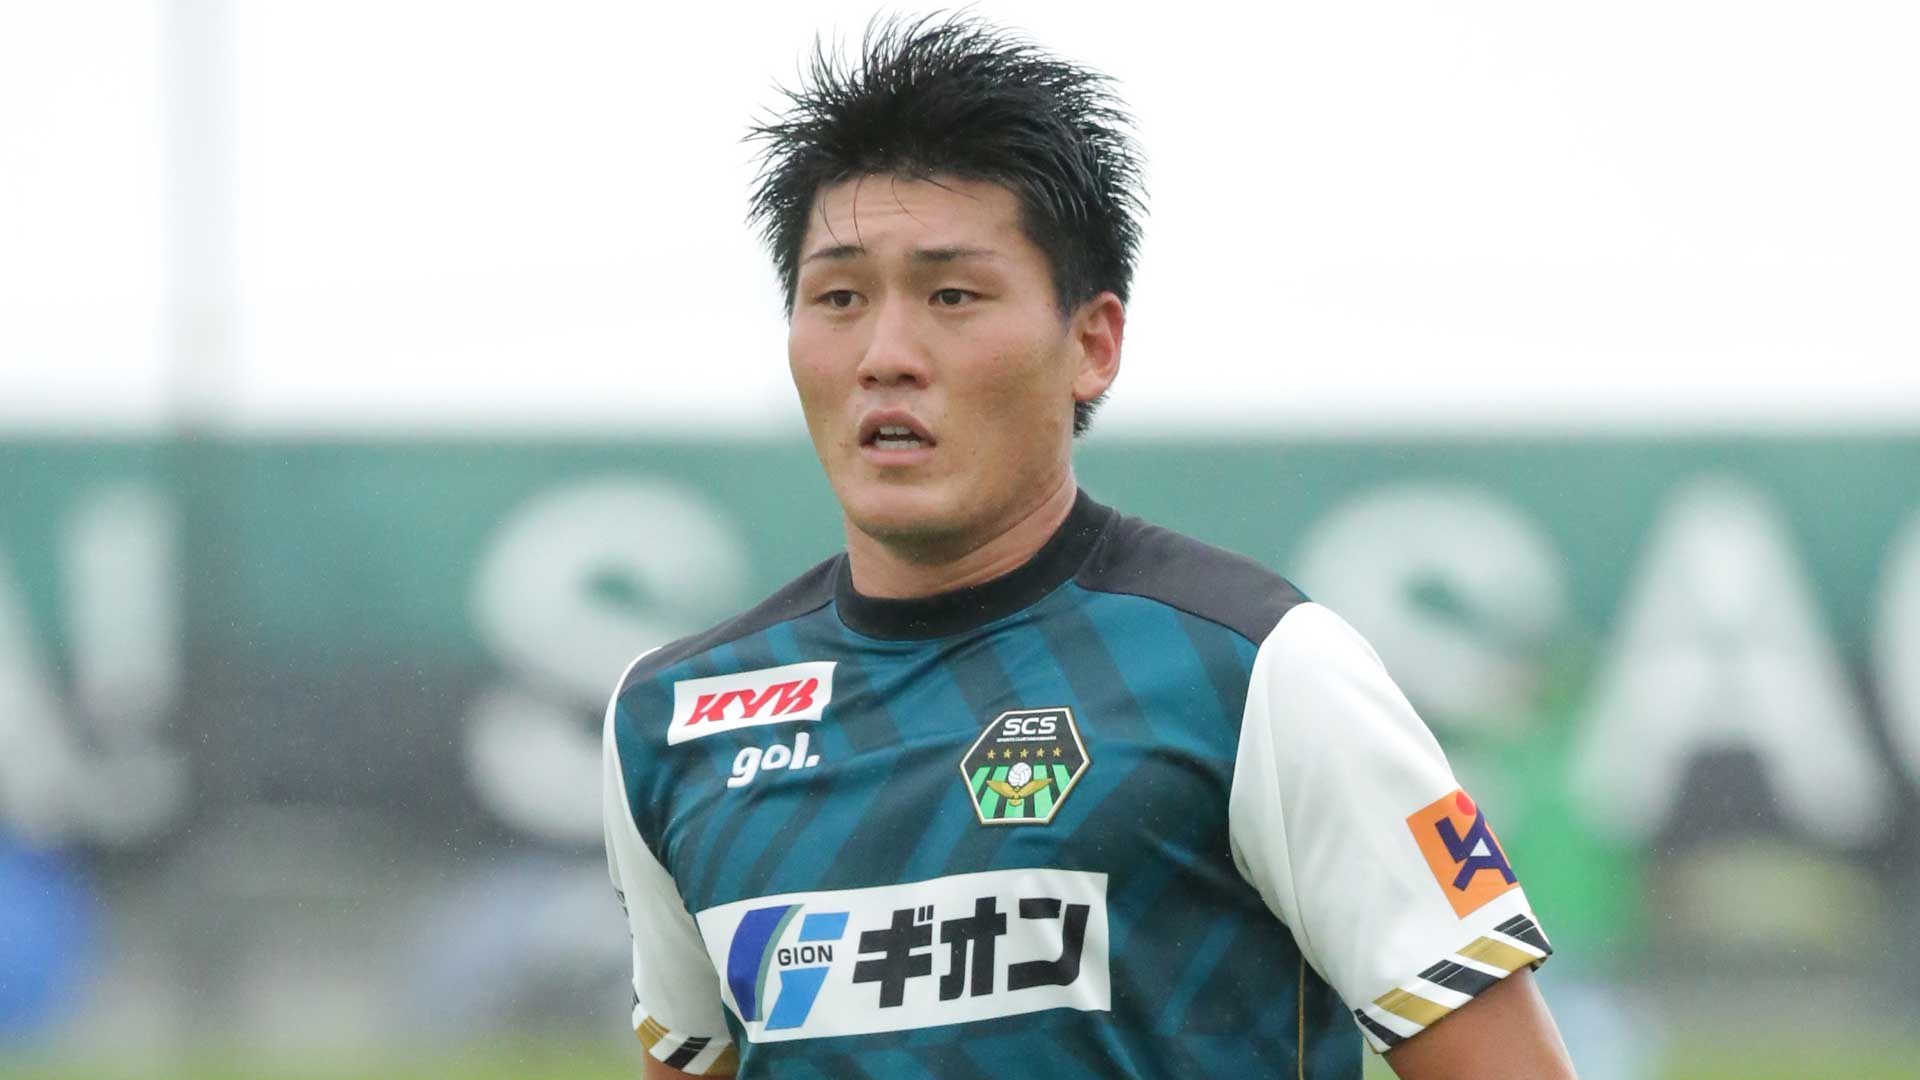 名古屋fw松本孝平 恩返しできず残念 Jflのfcマルヤス岡崎へ完全移籍 Goal Com 日本